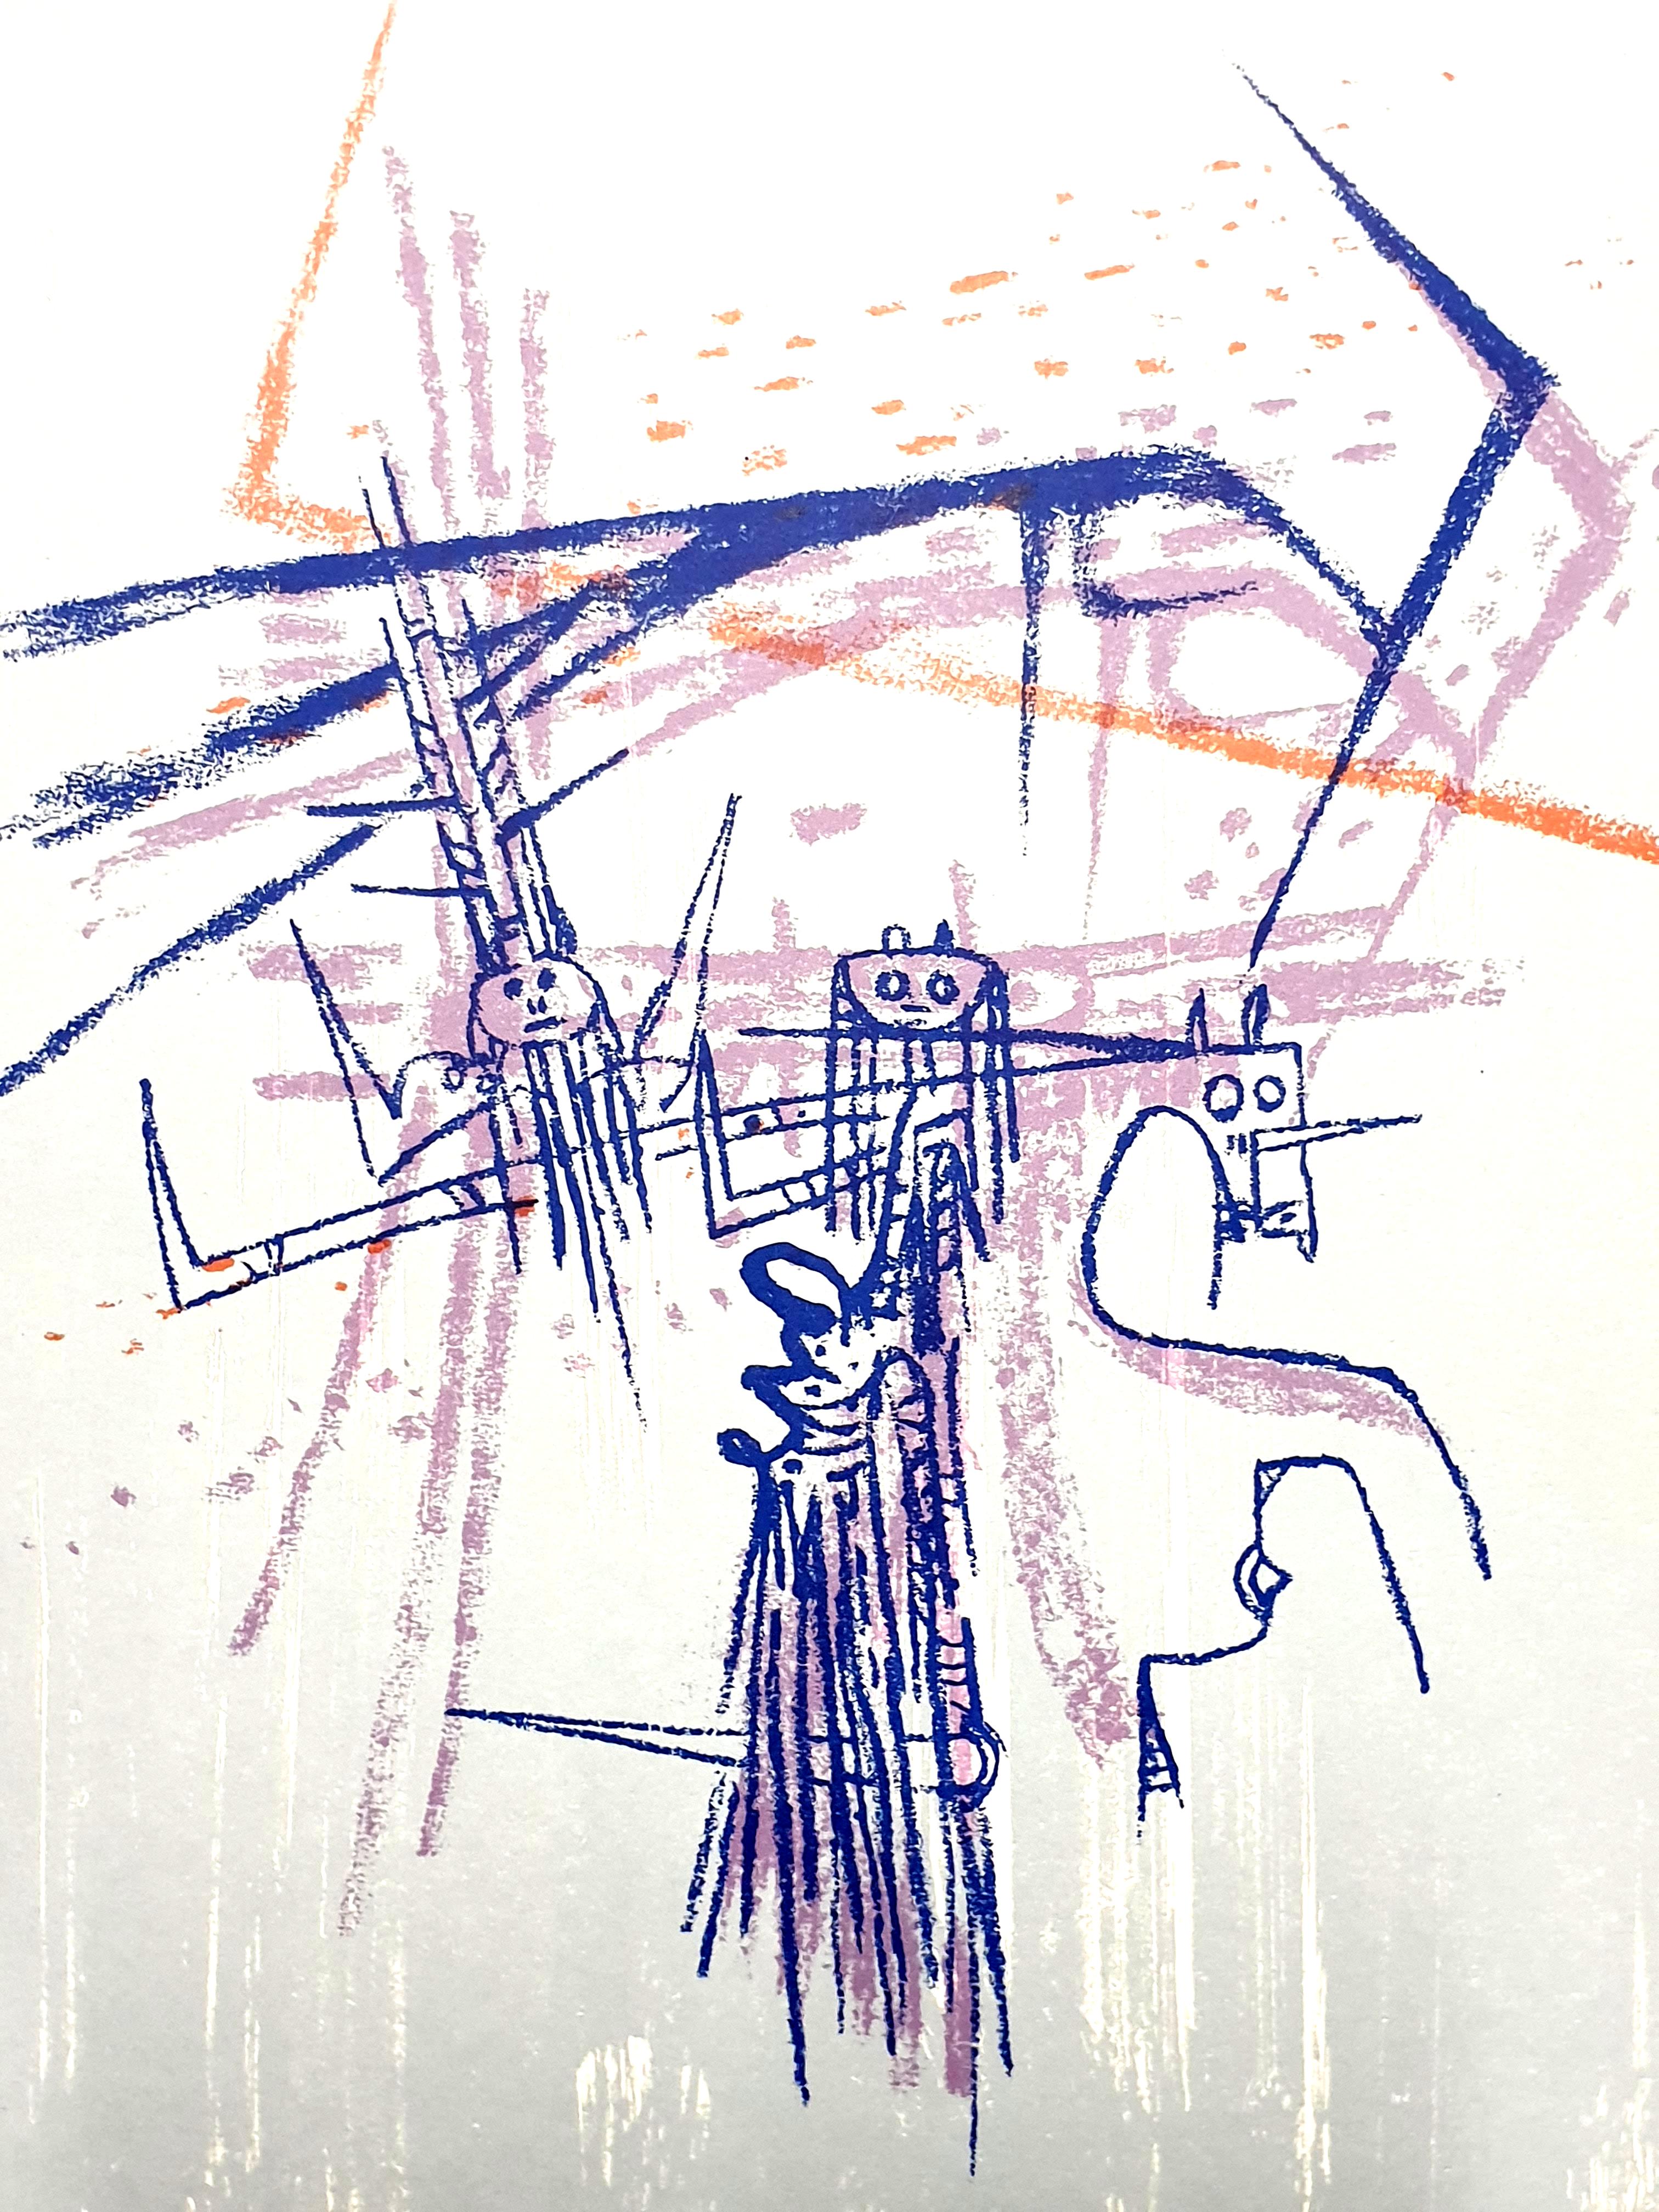 Wifredo Lam - Chevalier - Lithographie originale
Publié dans la revue d'art de luxe, XXe Siecle
1963
Dimensions : 32 x 24 cm 
Éditeur : G. di San Lazzaro.
Non signé et non numéroté tel que publié